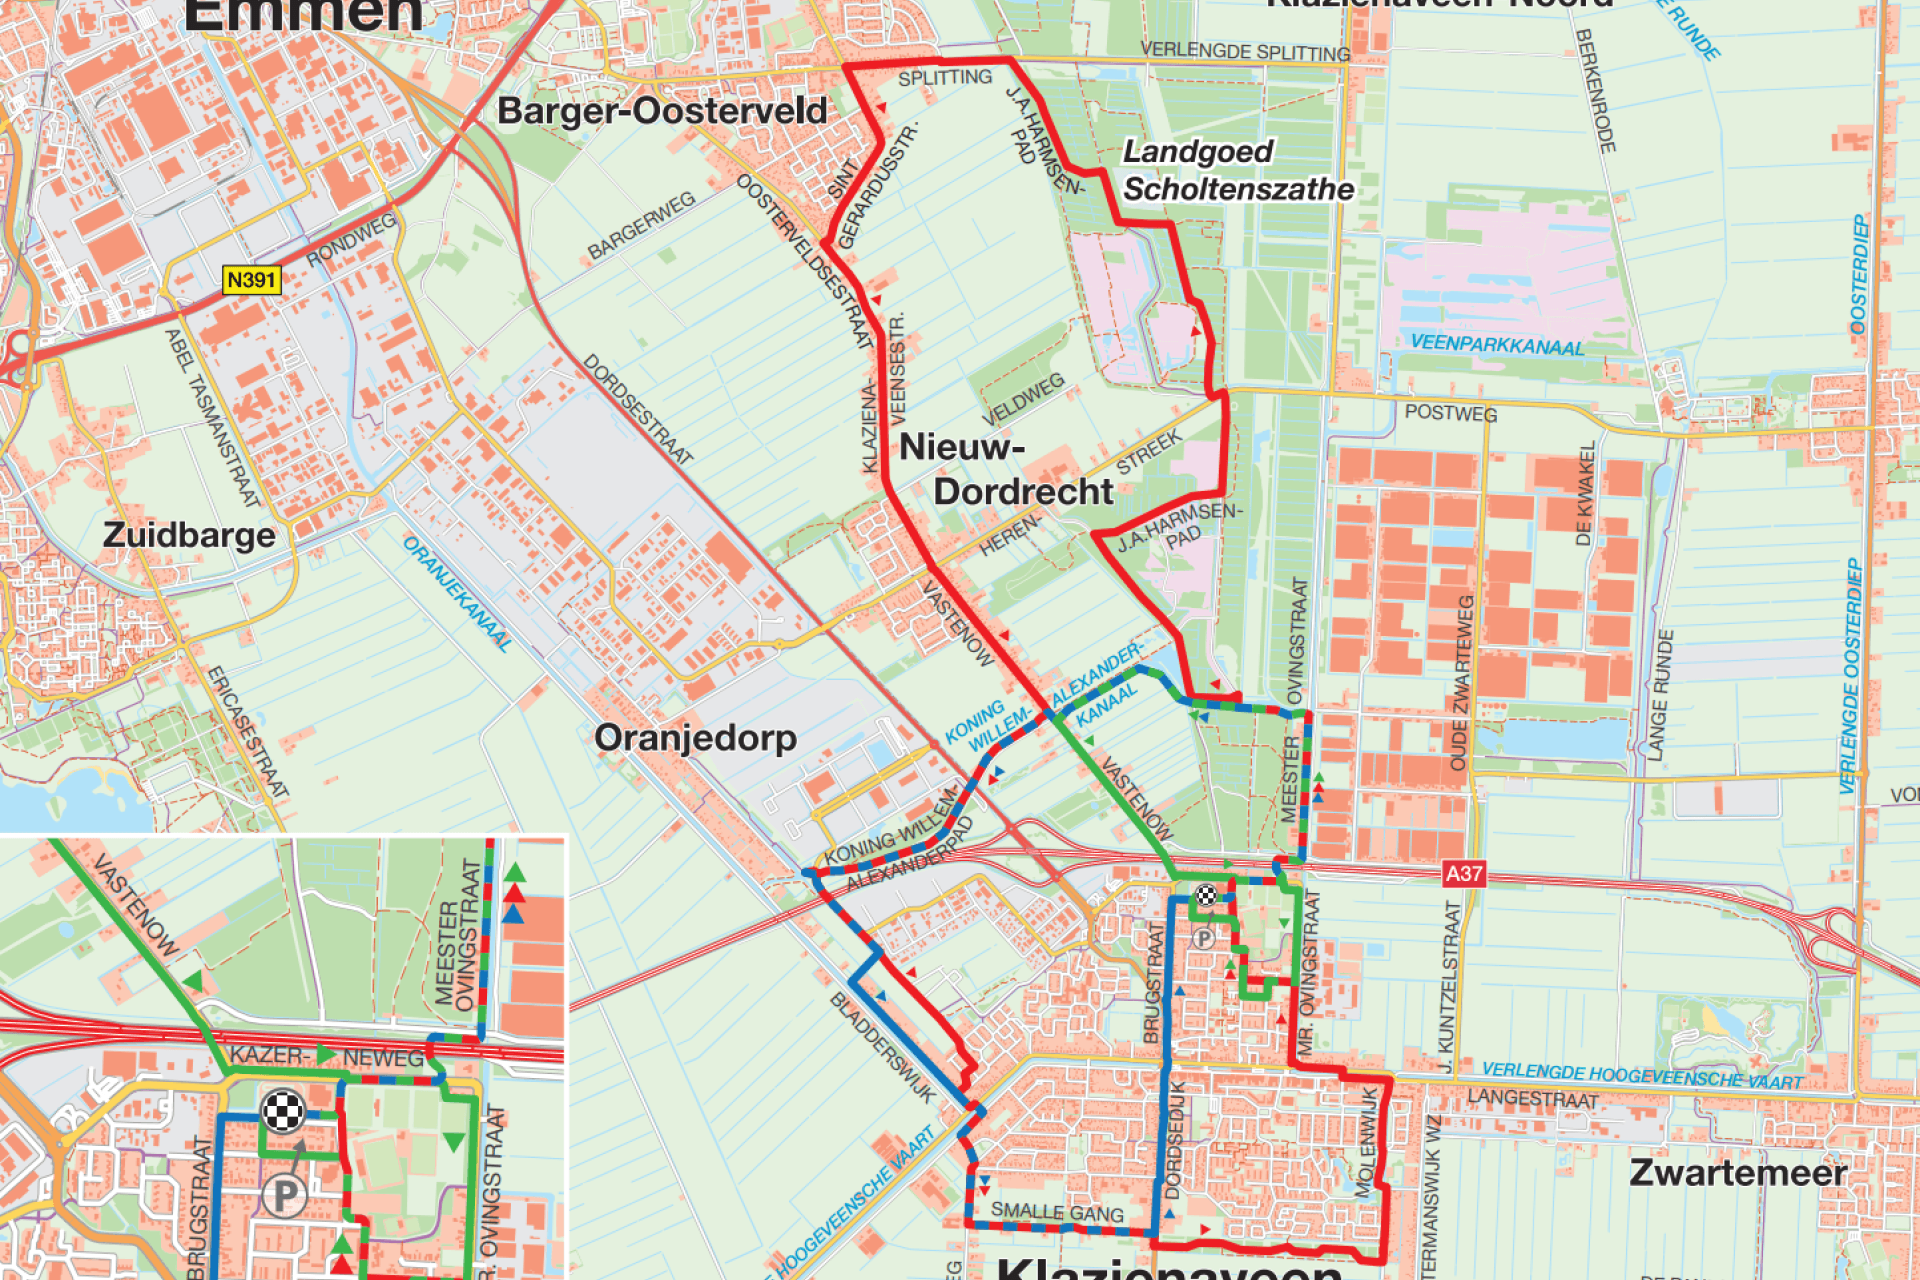 Hardlooproute in Klazienaveen weergegeven op een plattegrond